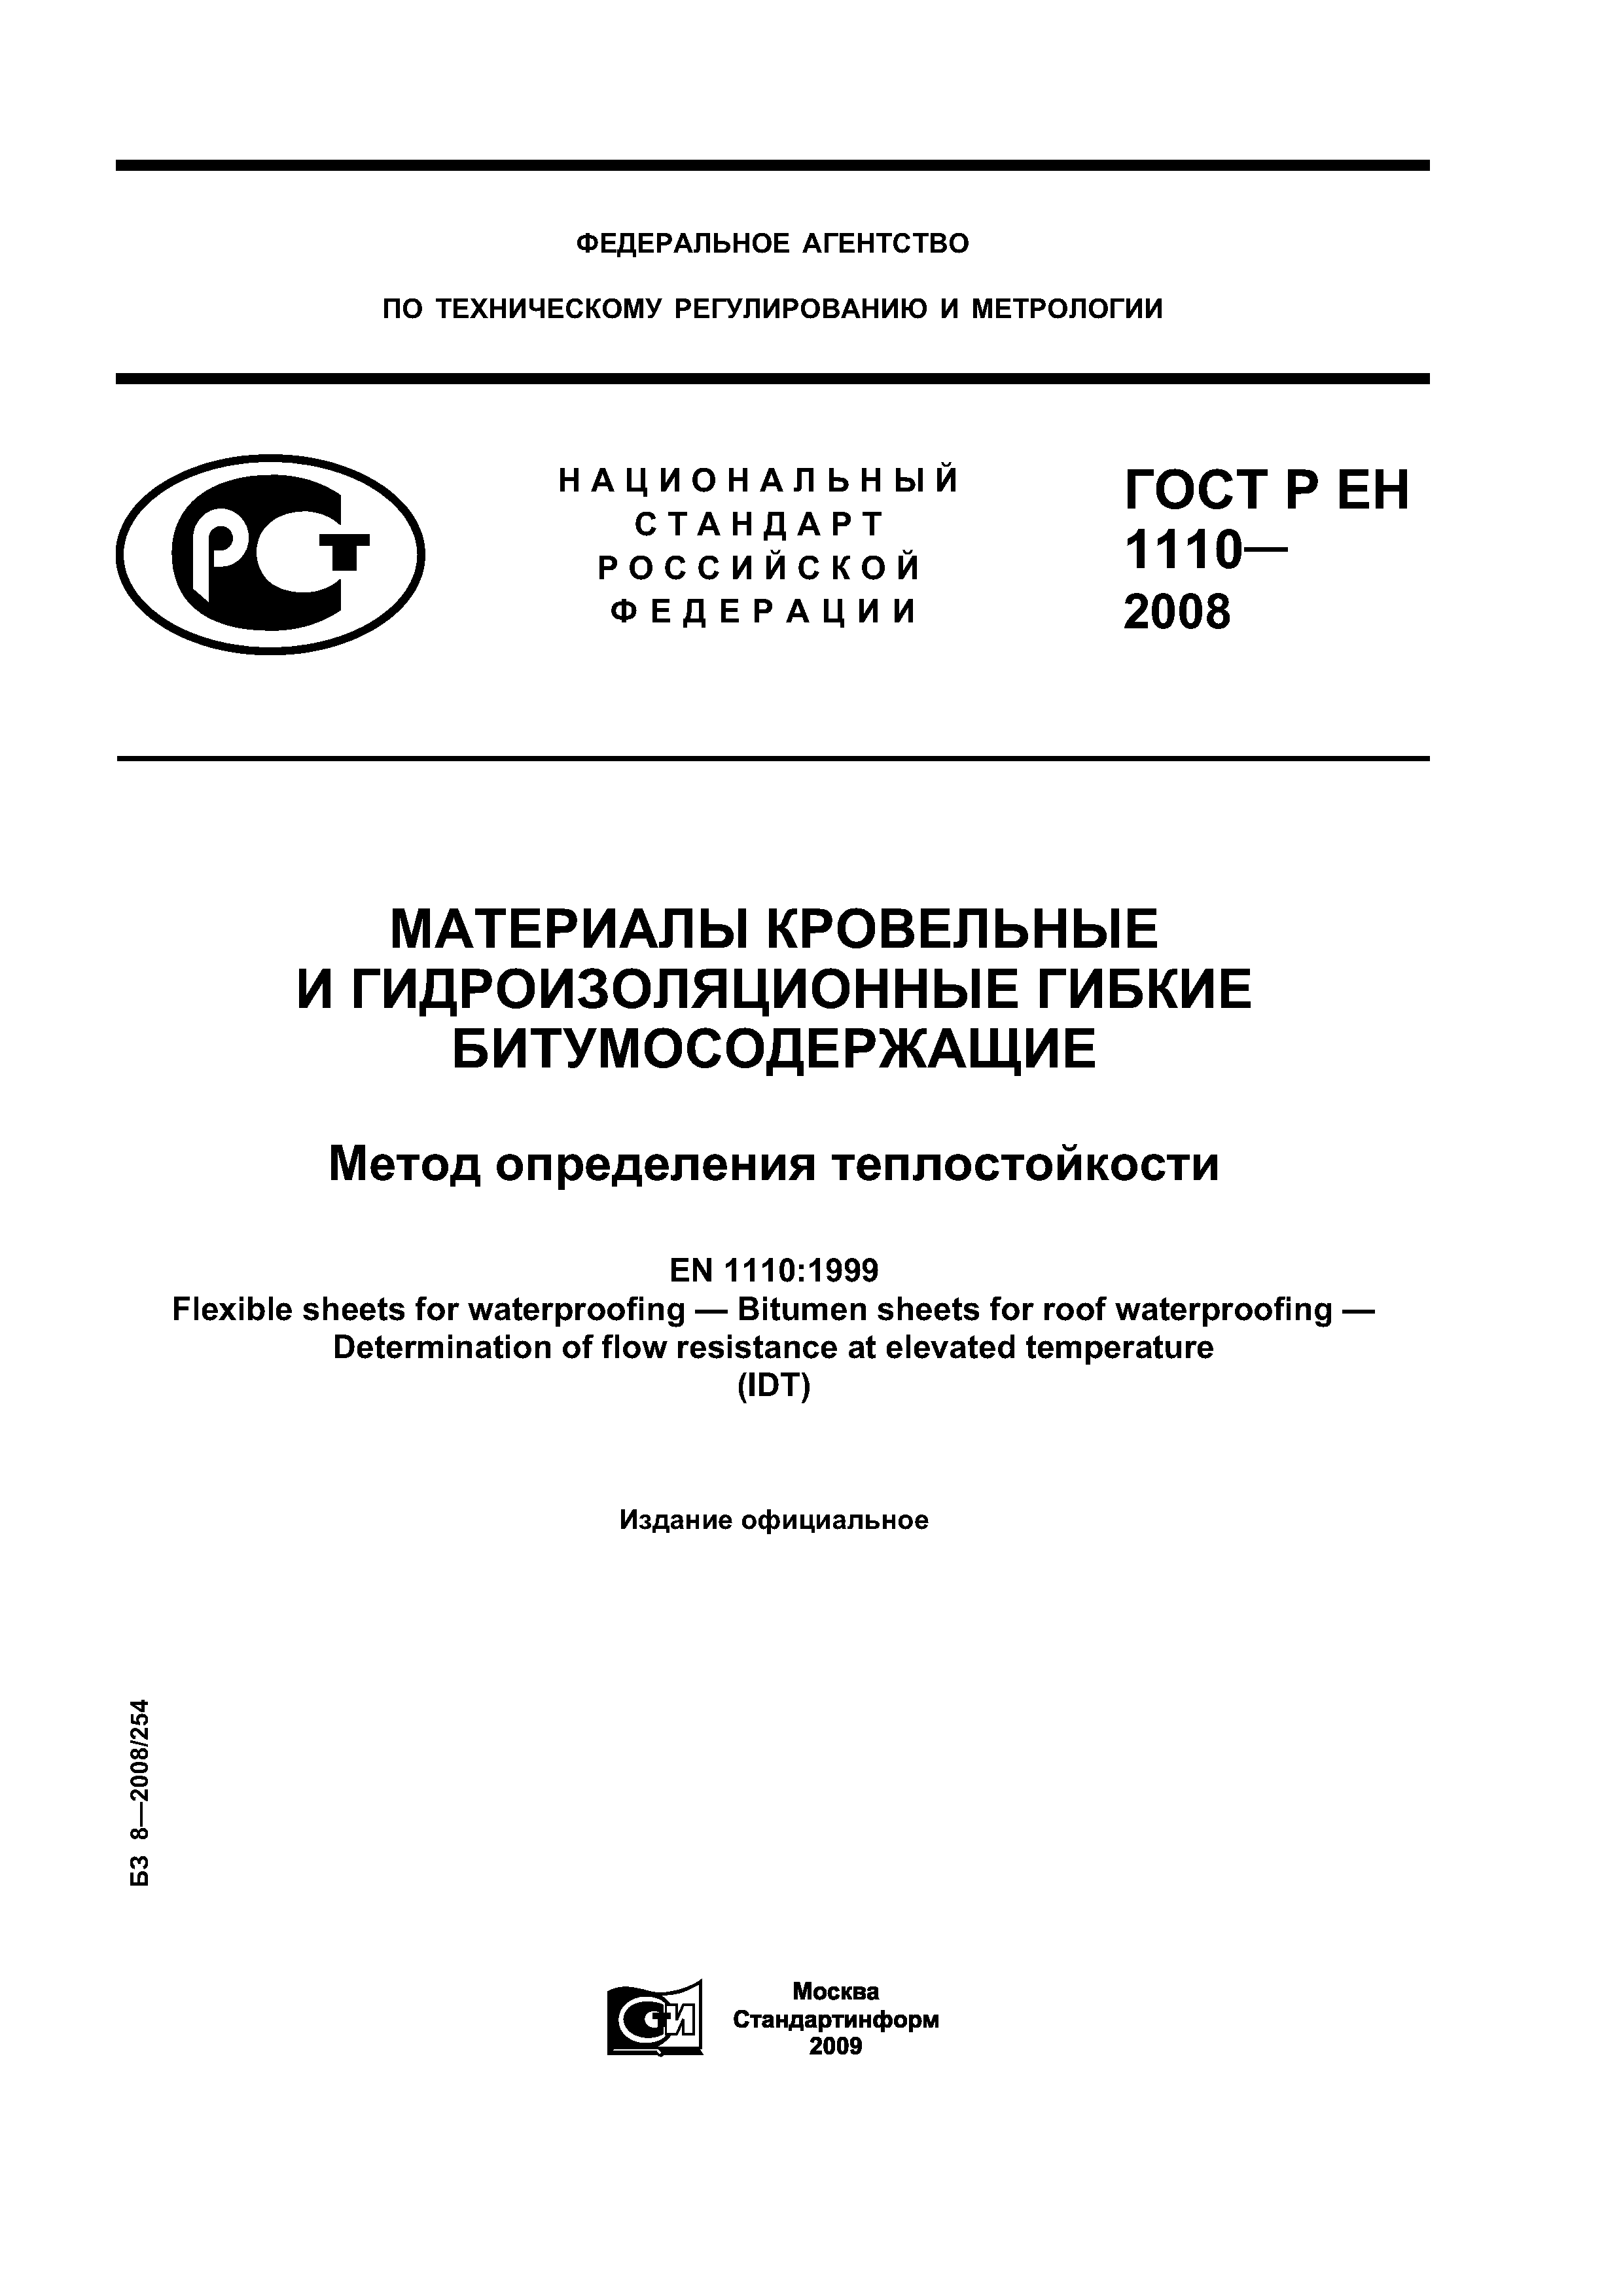 ГОСТ Р ЕН 1110-2008